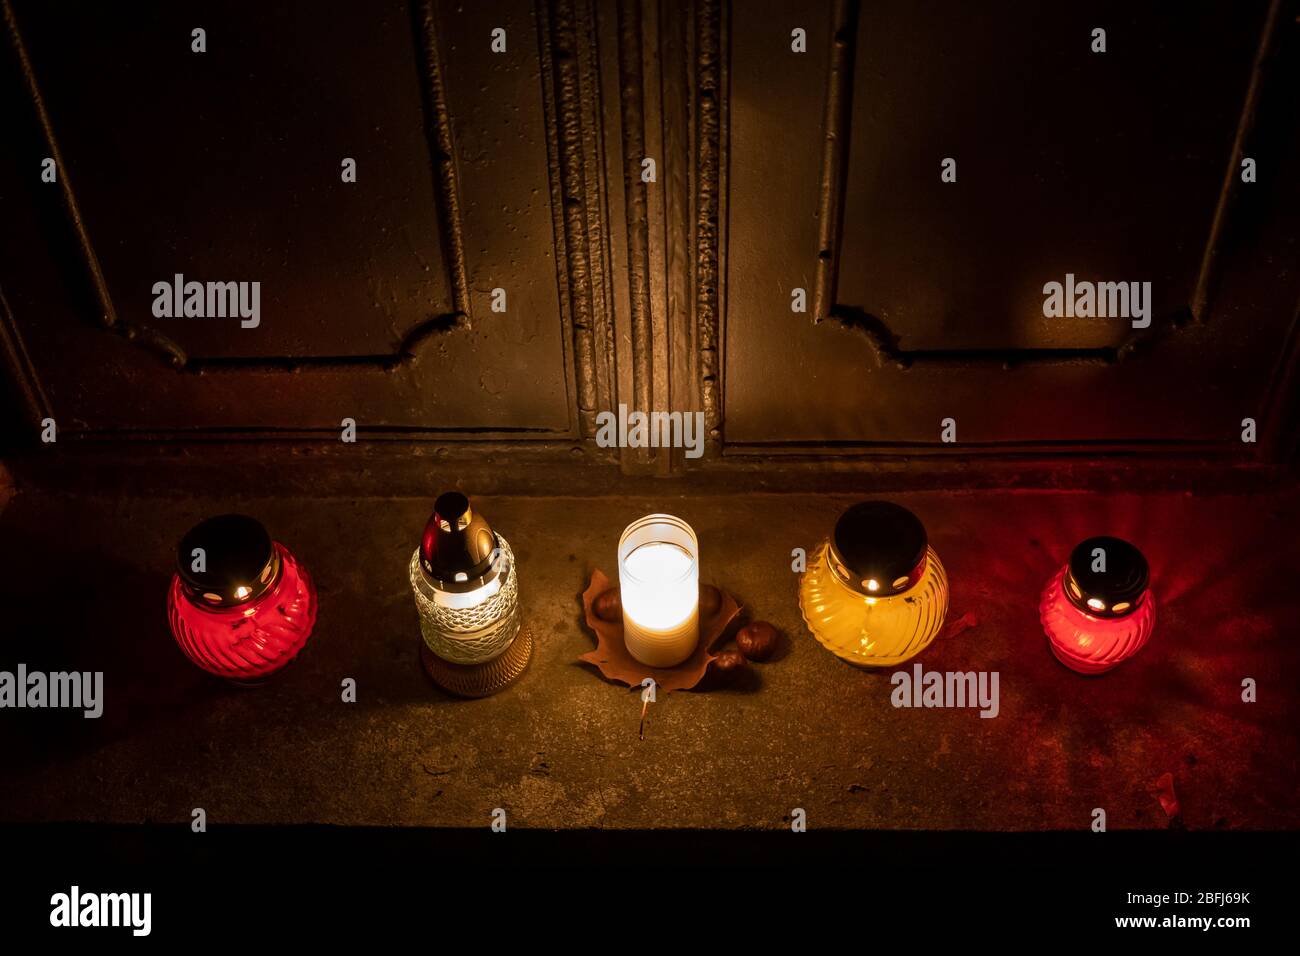 Des bougies tombales s'allument à gauche aux portes d'un vieux tombeau dans un cimetière la nuit, style rétro vintage stylisé Banque D'Images